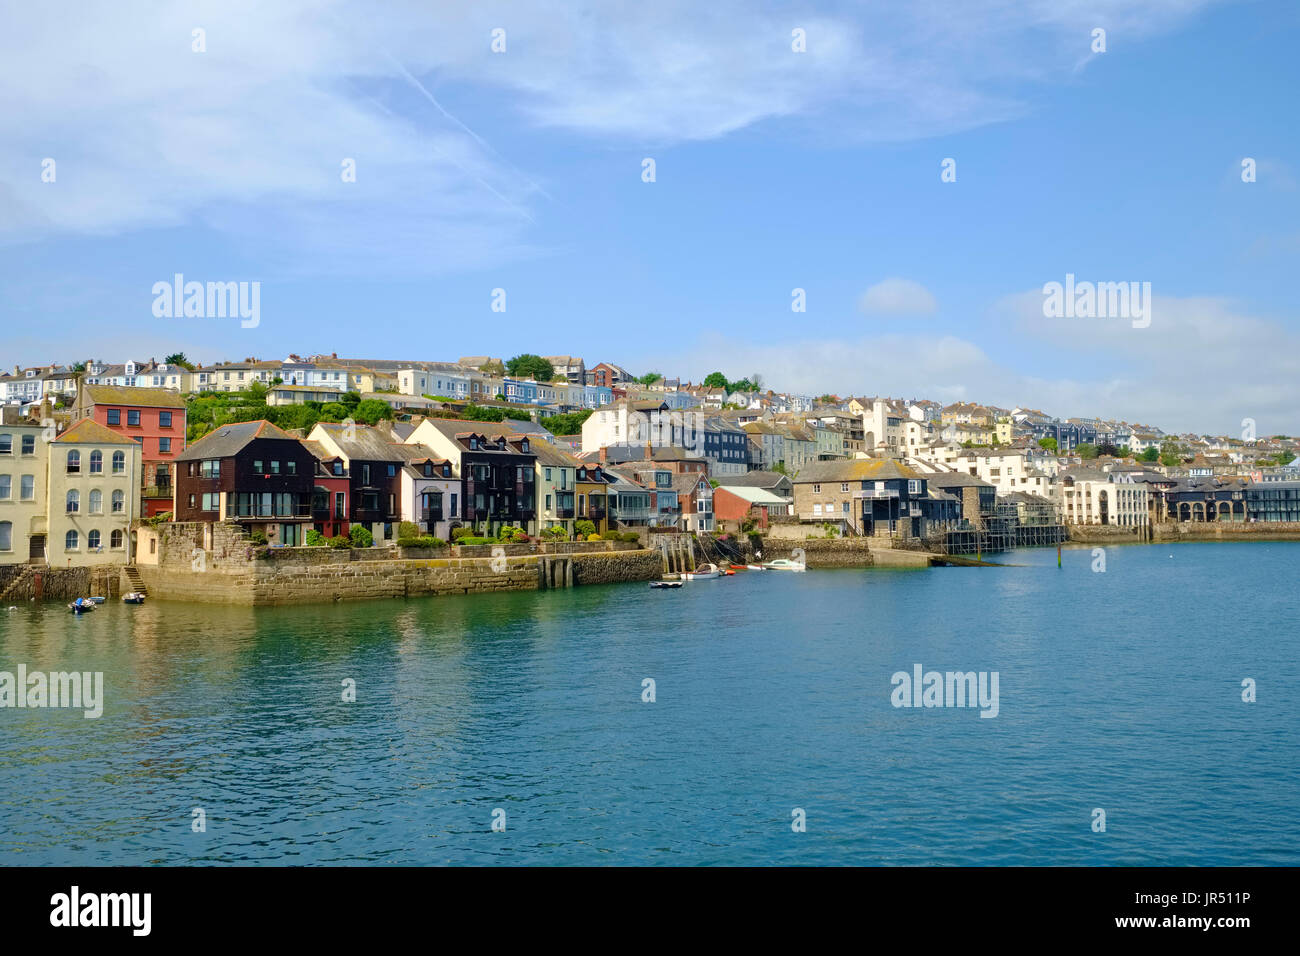 La ville de Falmouth, Cornwall - maisons au bord de l'eau à l'estuaire du port et quais Paquet UK Banque D'Images